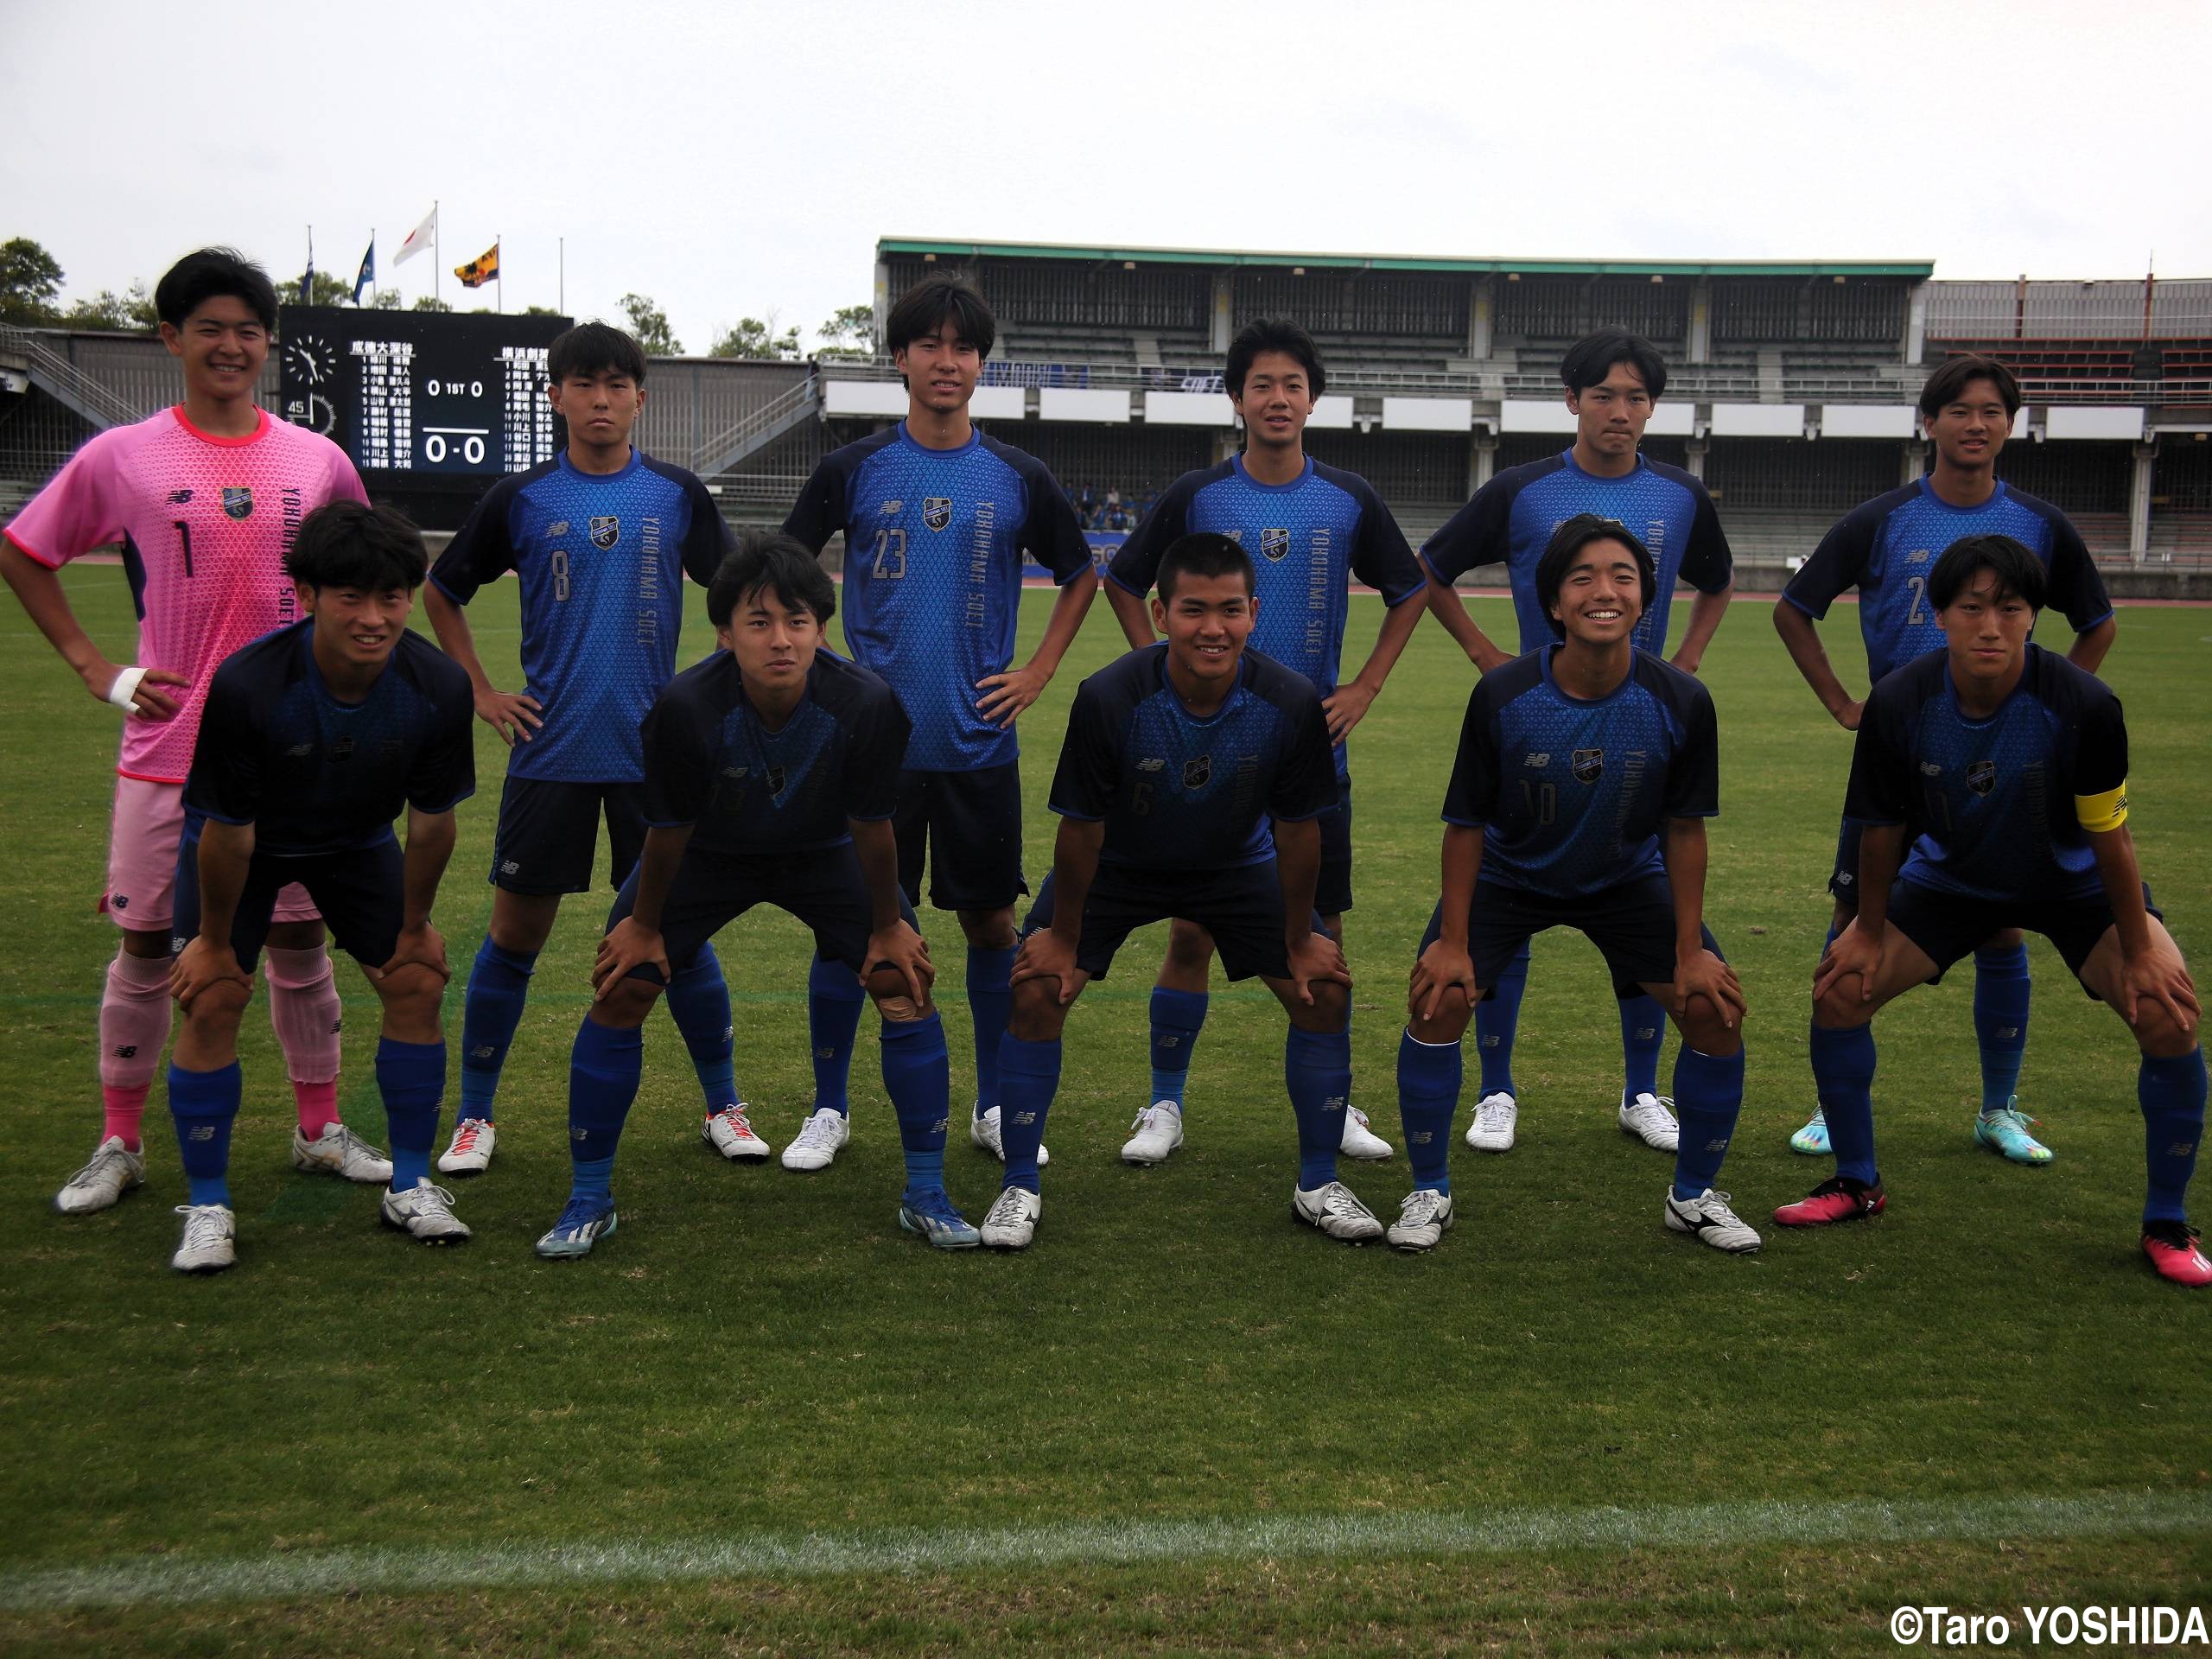 [関東大会]横浜創英がグループB決勝で3-0勝利。初の関東大会で3勝(21枚)